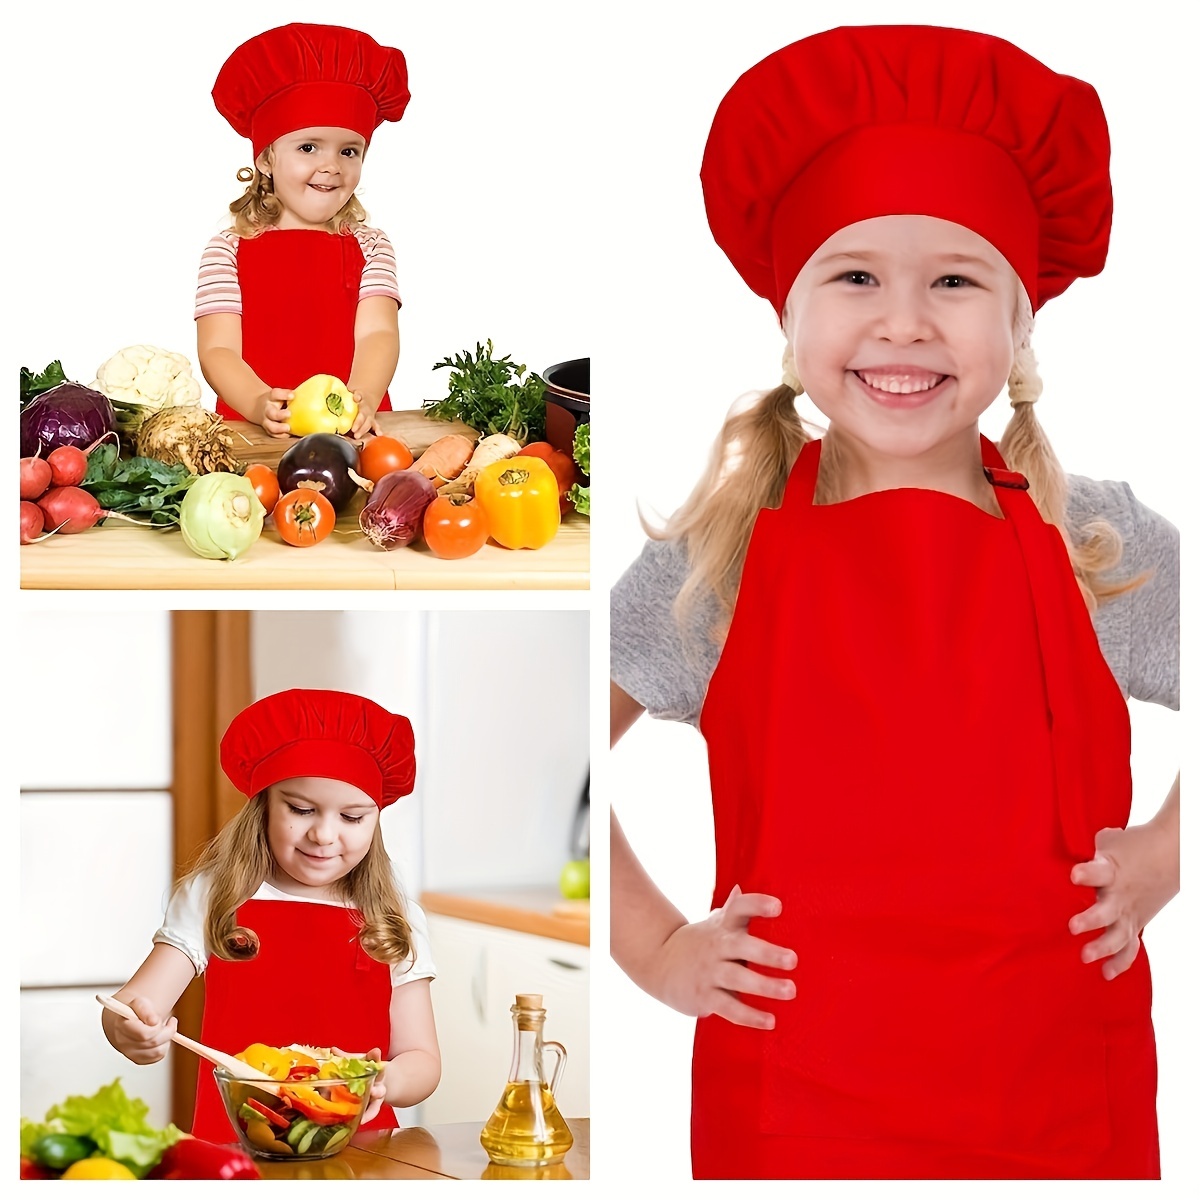 Niño con gorro de cocinero y delantal cocinando